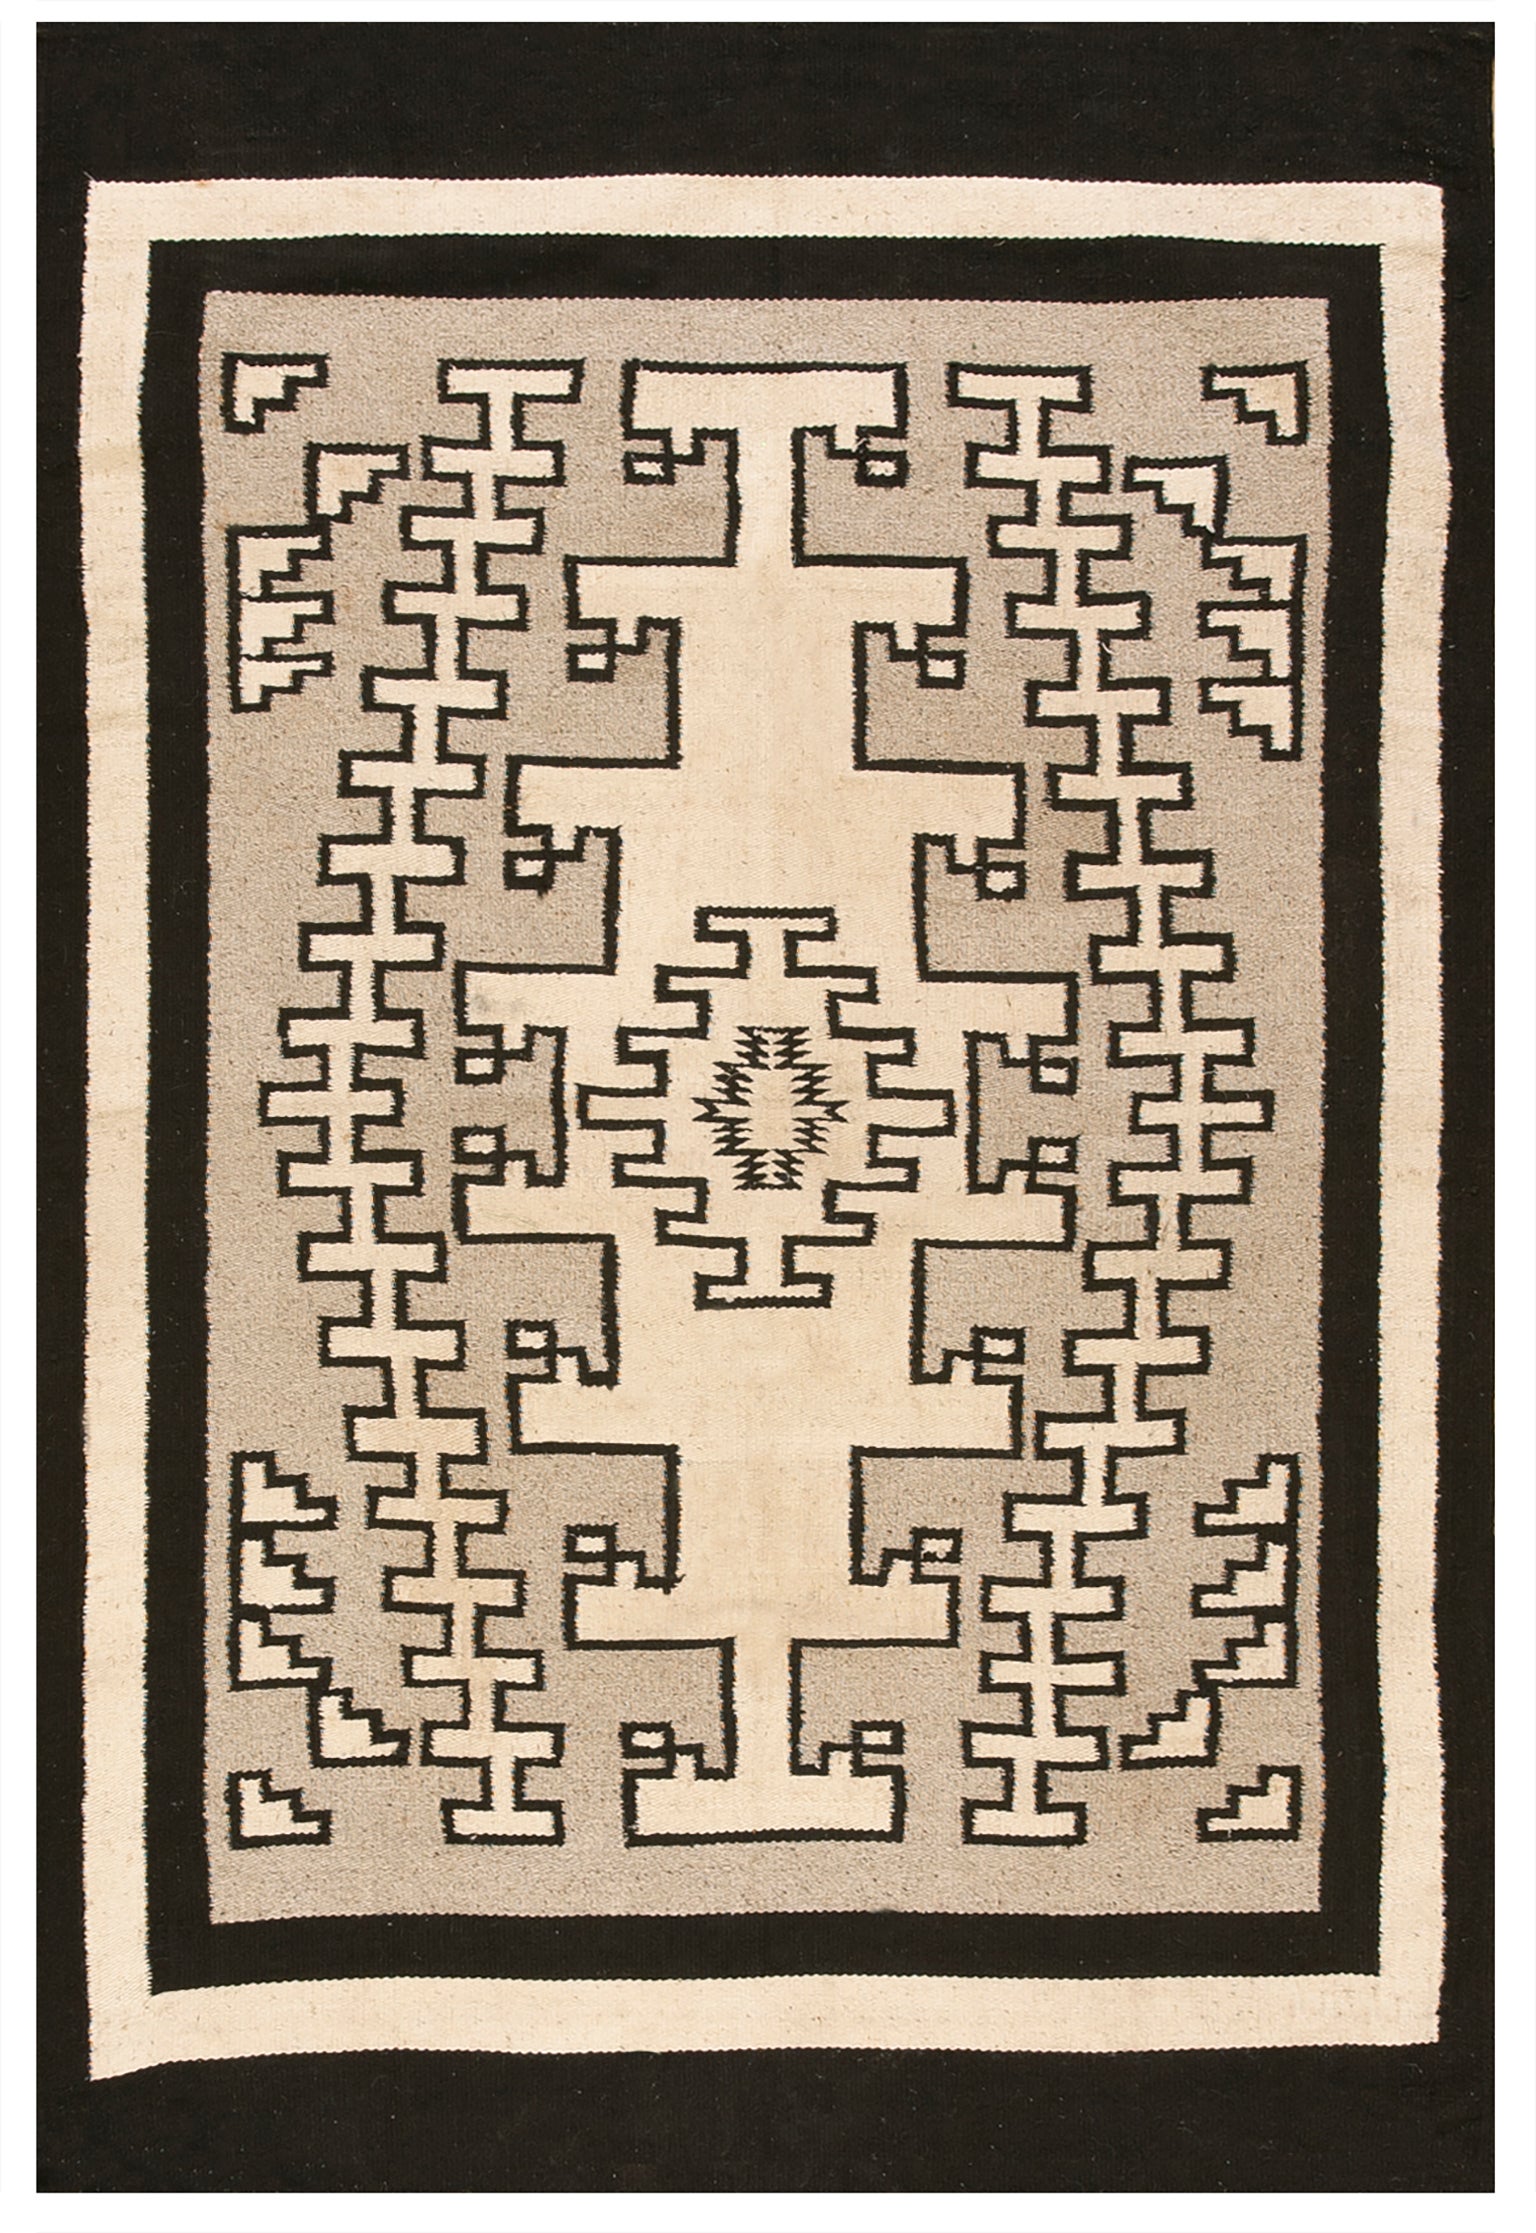 1940s American Navajo Carpet ( 4'7" x 6' 10" - 140 x 210 cm ) For Sale